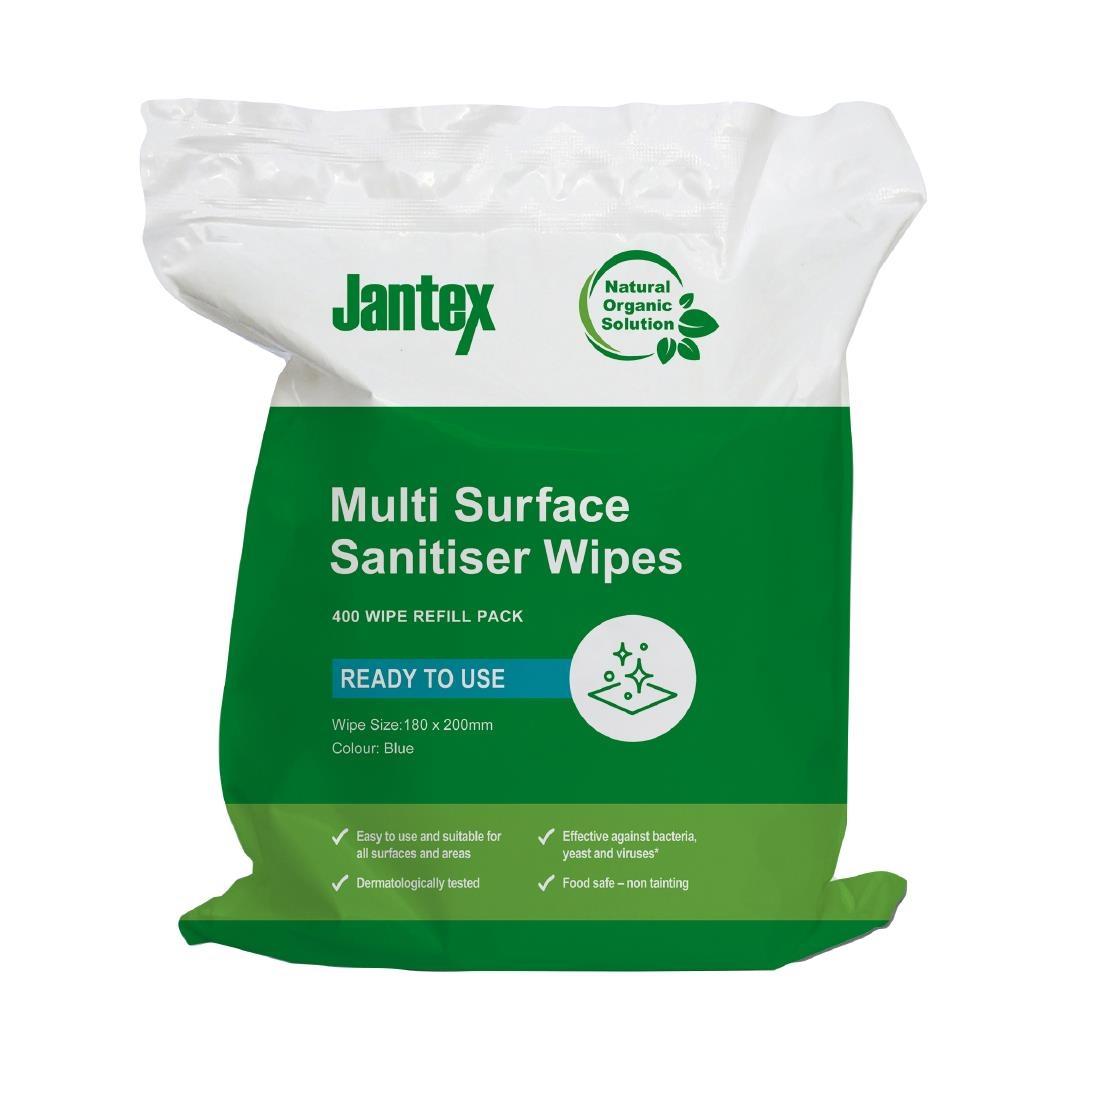 Jantex Green RTU Surface Sanitiser Wipes Refill Pack 200mm (Pack of 400)